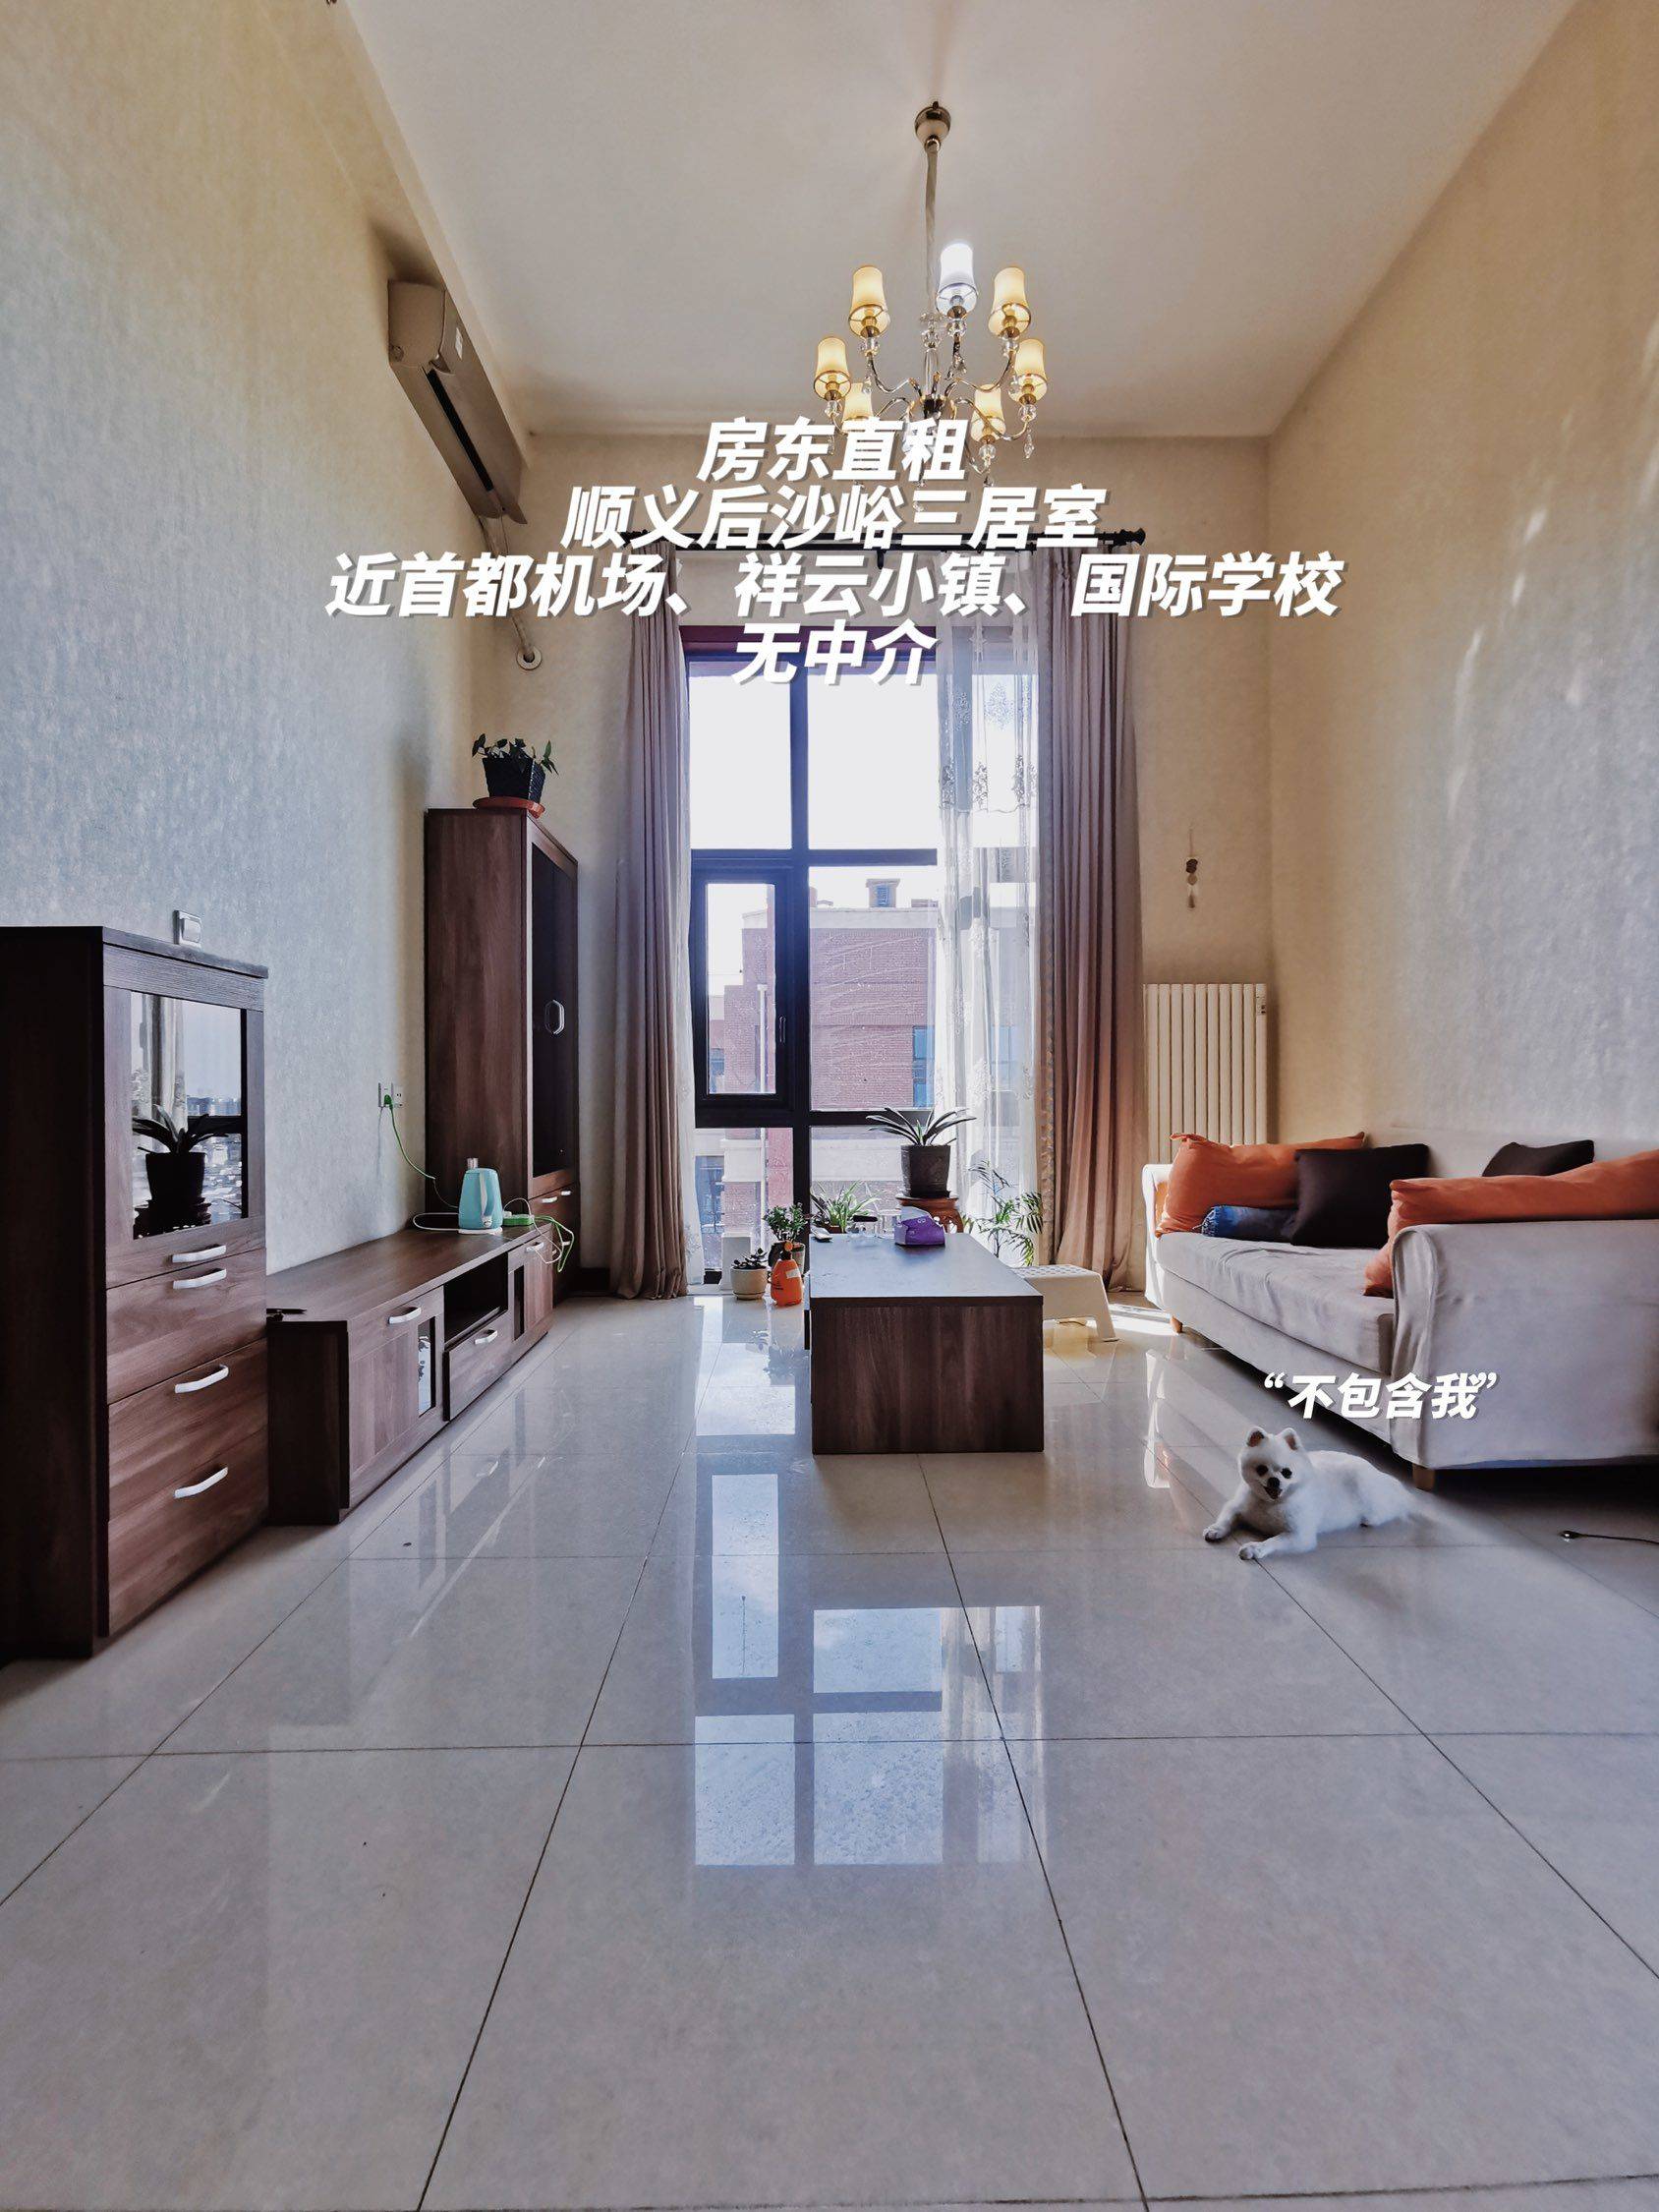 北京-順義-不能养宠物,溫馨小窩,乾淨治愈